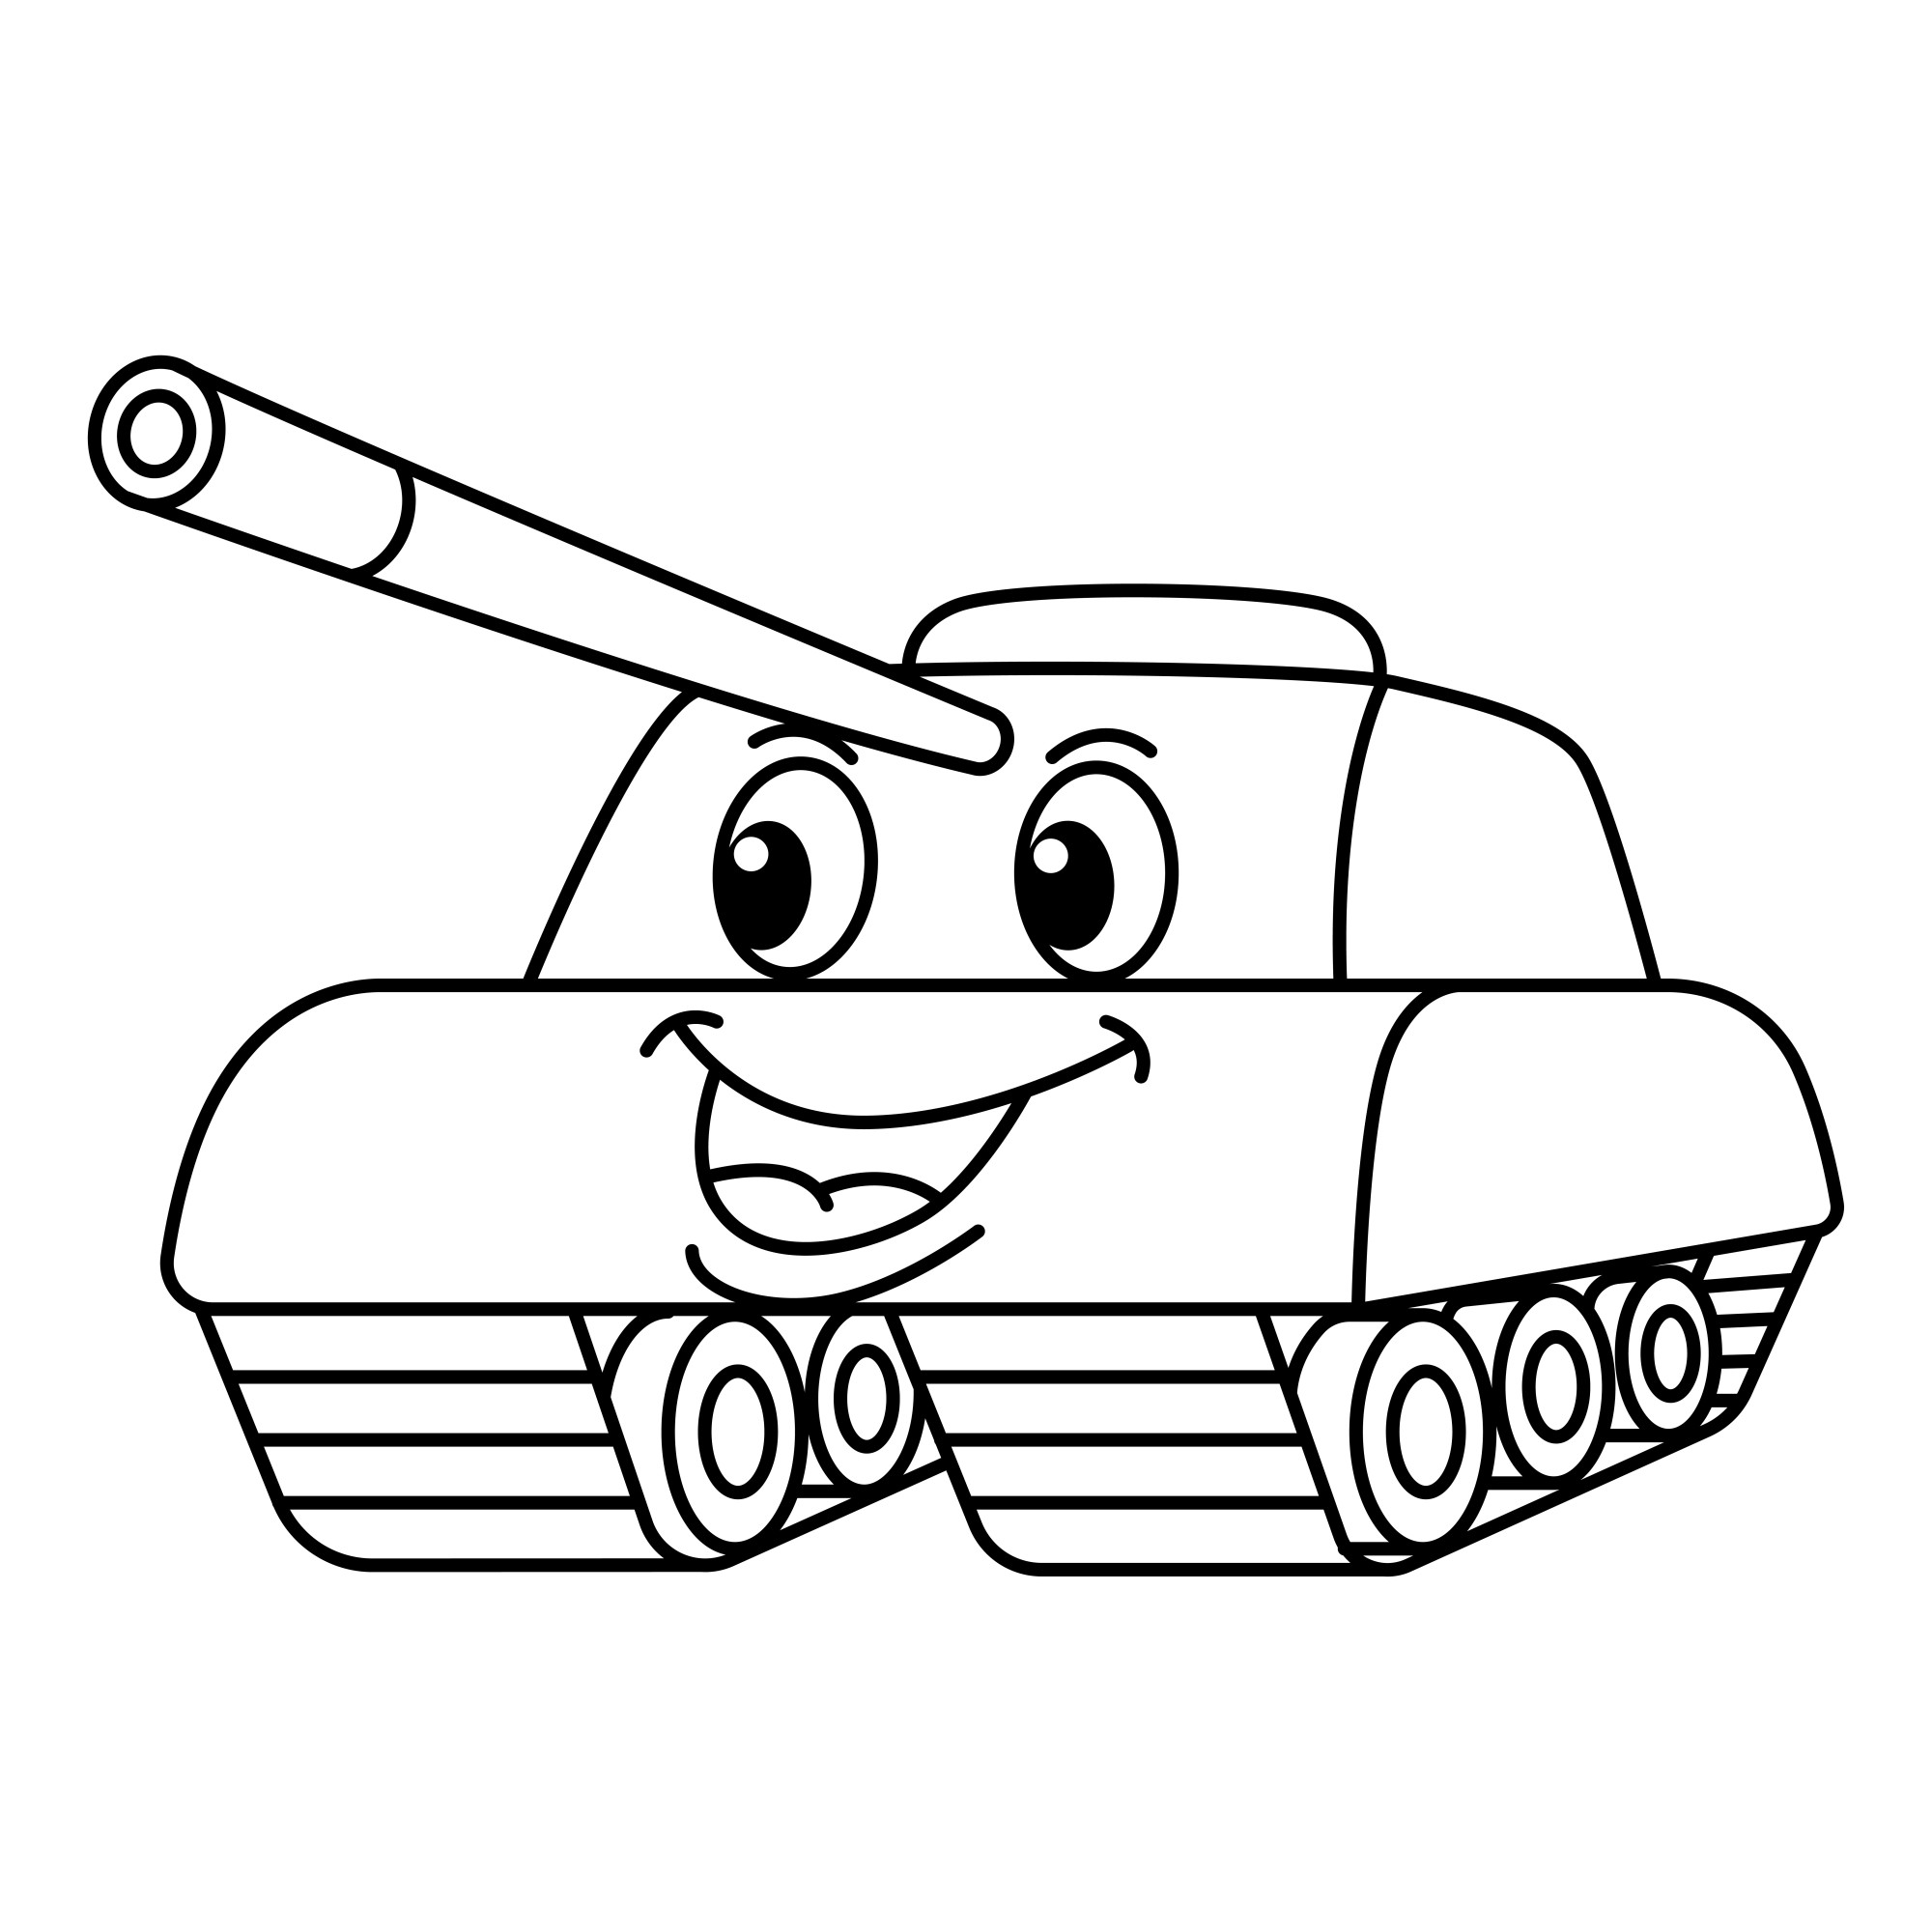 Раскраска для детей: мультяшный танк с лицом